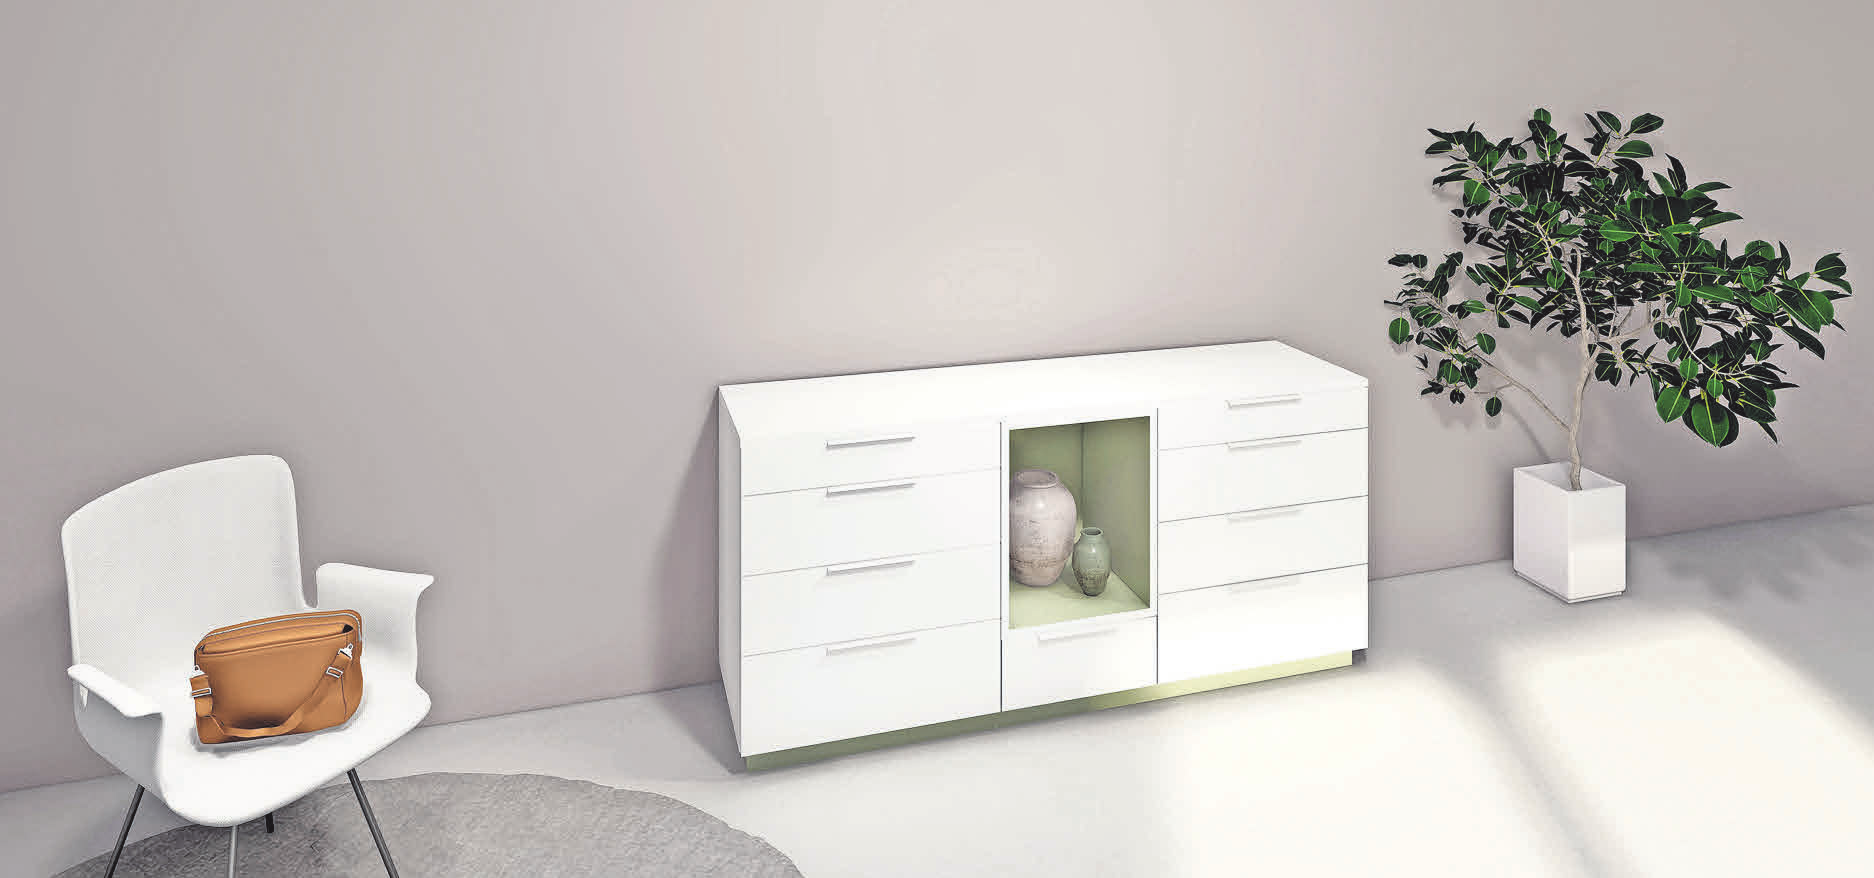 Die Tischlerei Helmrich's entwickelt Möbel mit Farbakzenten.